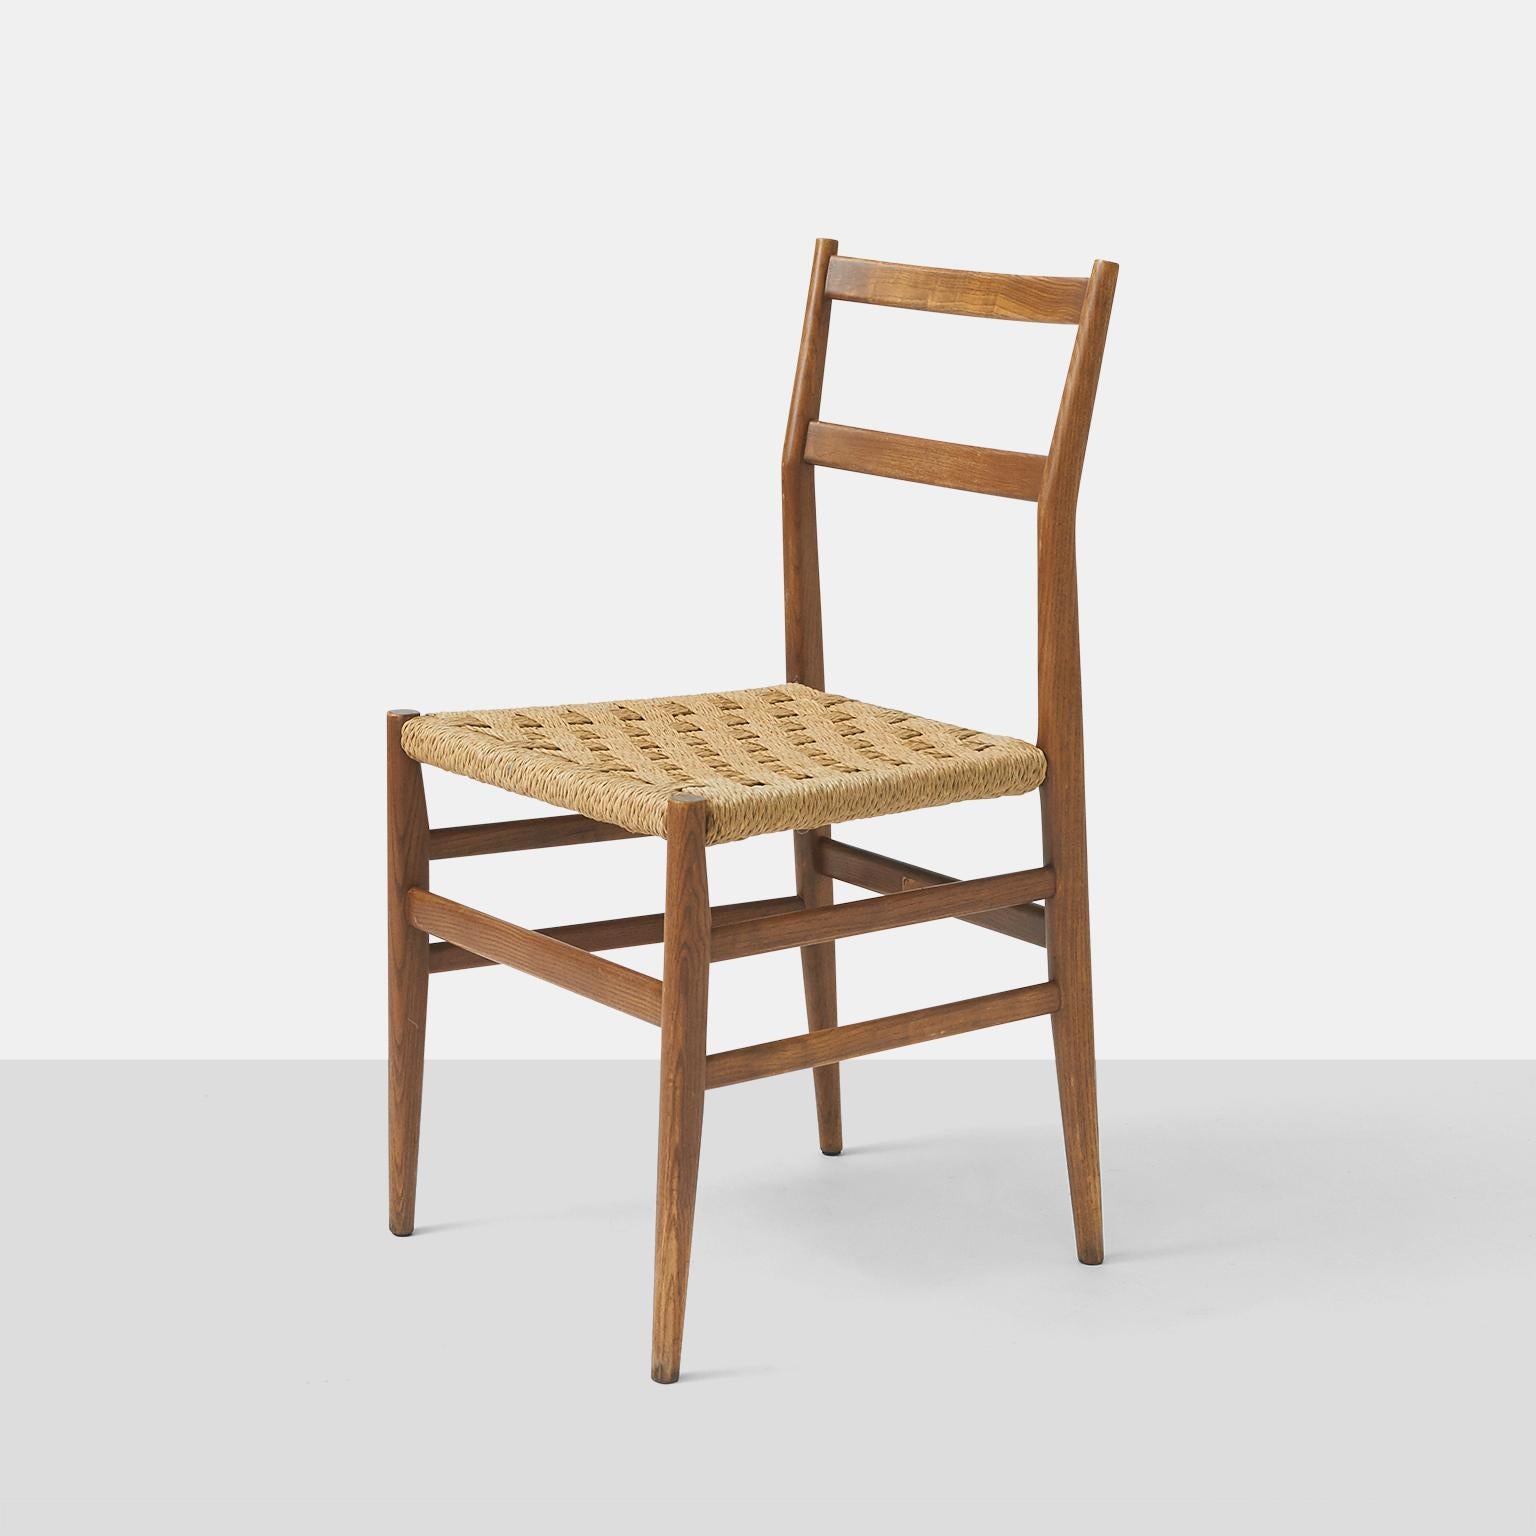 Ein Paar Esszimmerstühle von Gio Ponti aus Esche mit Sitzflächen aus geflochtenem Binsengeflecht, die alle ihr originales Label behalten.

Der Preis gilt für das Paar.